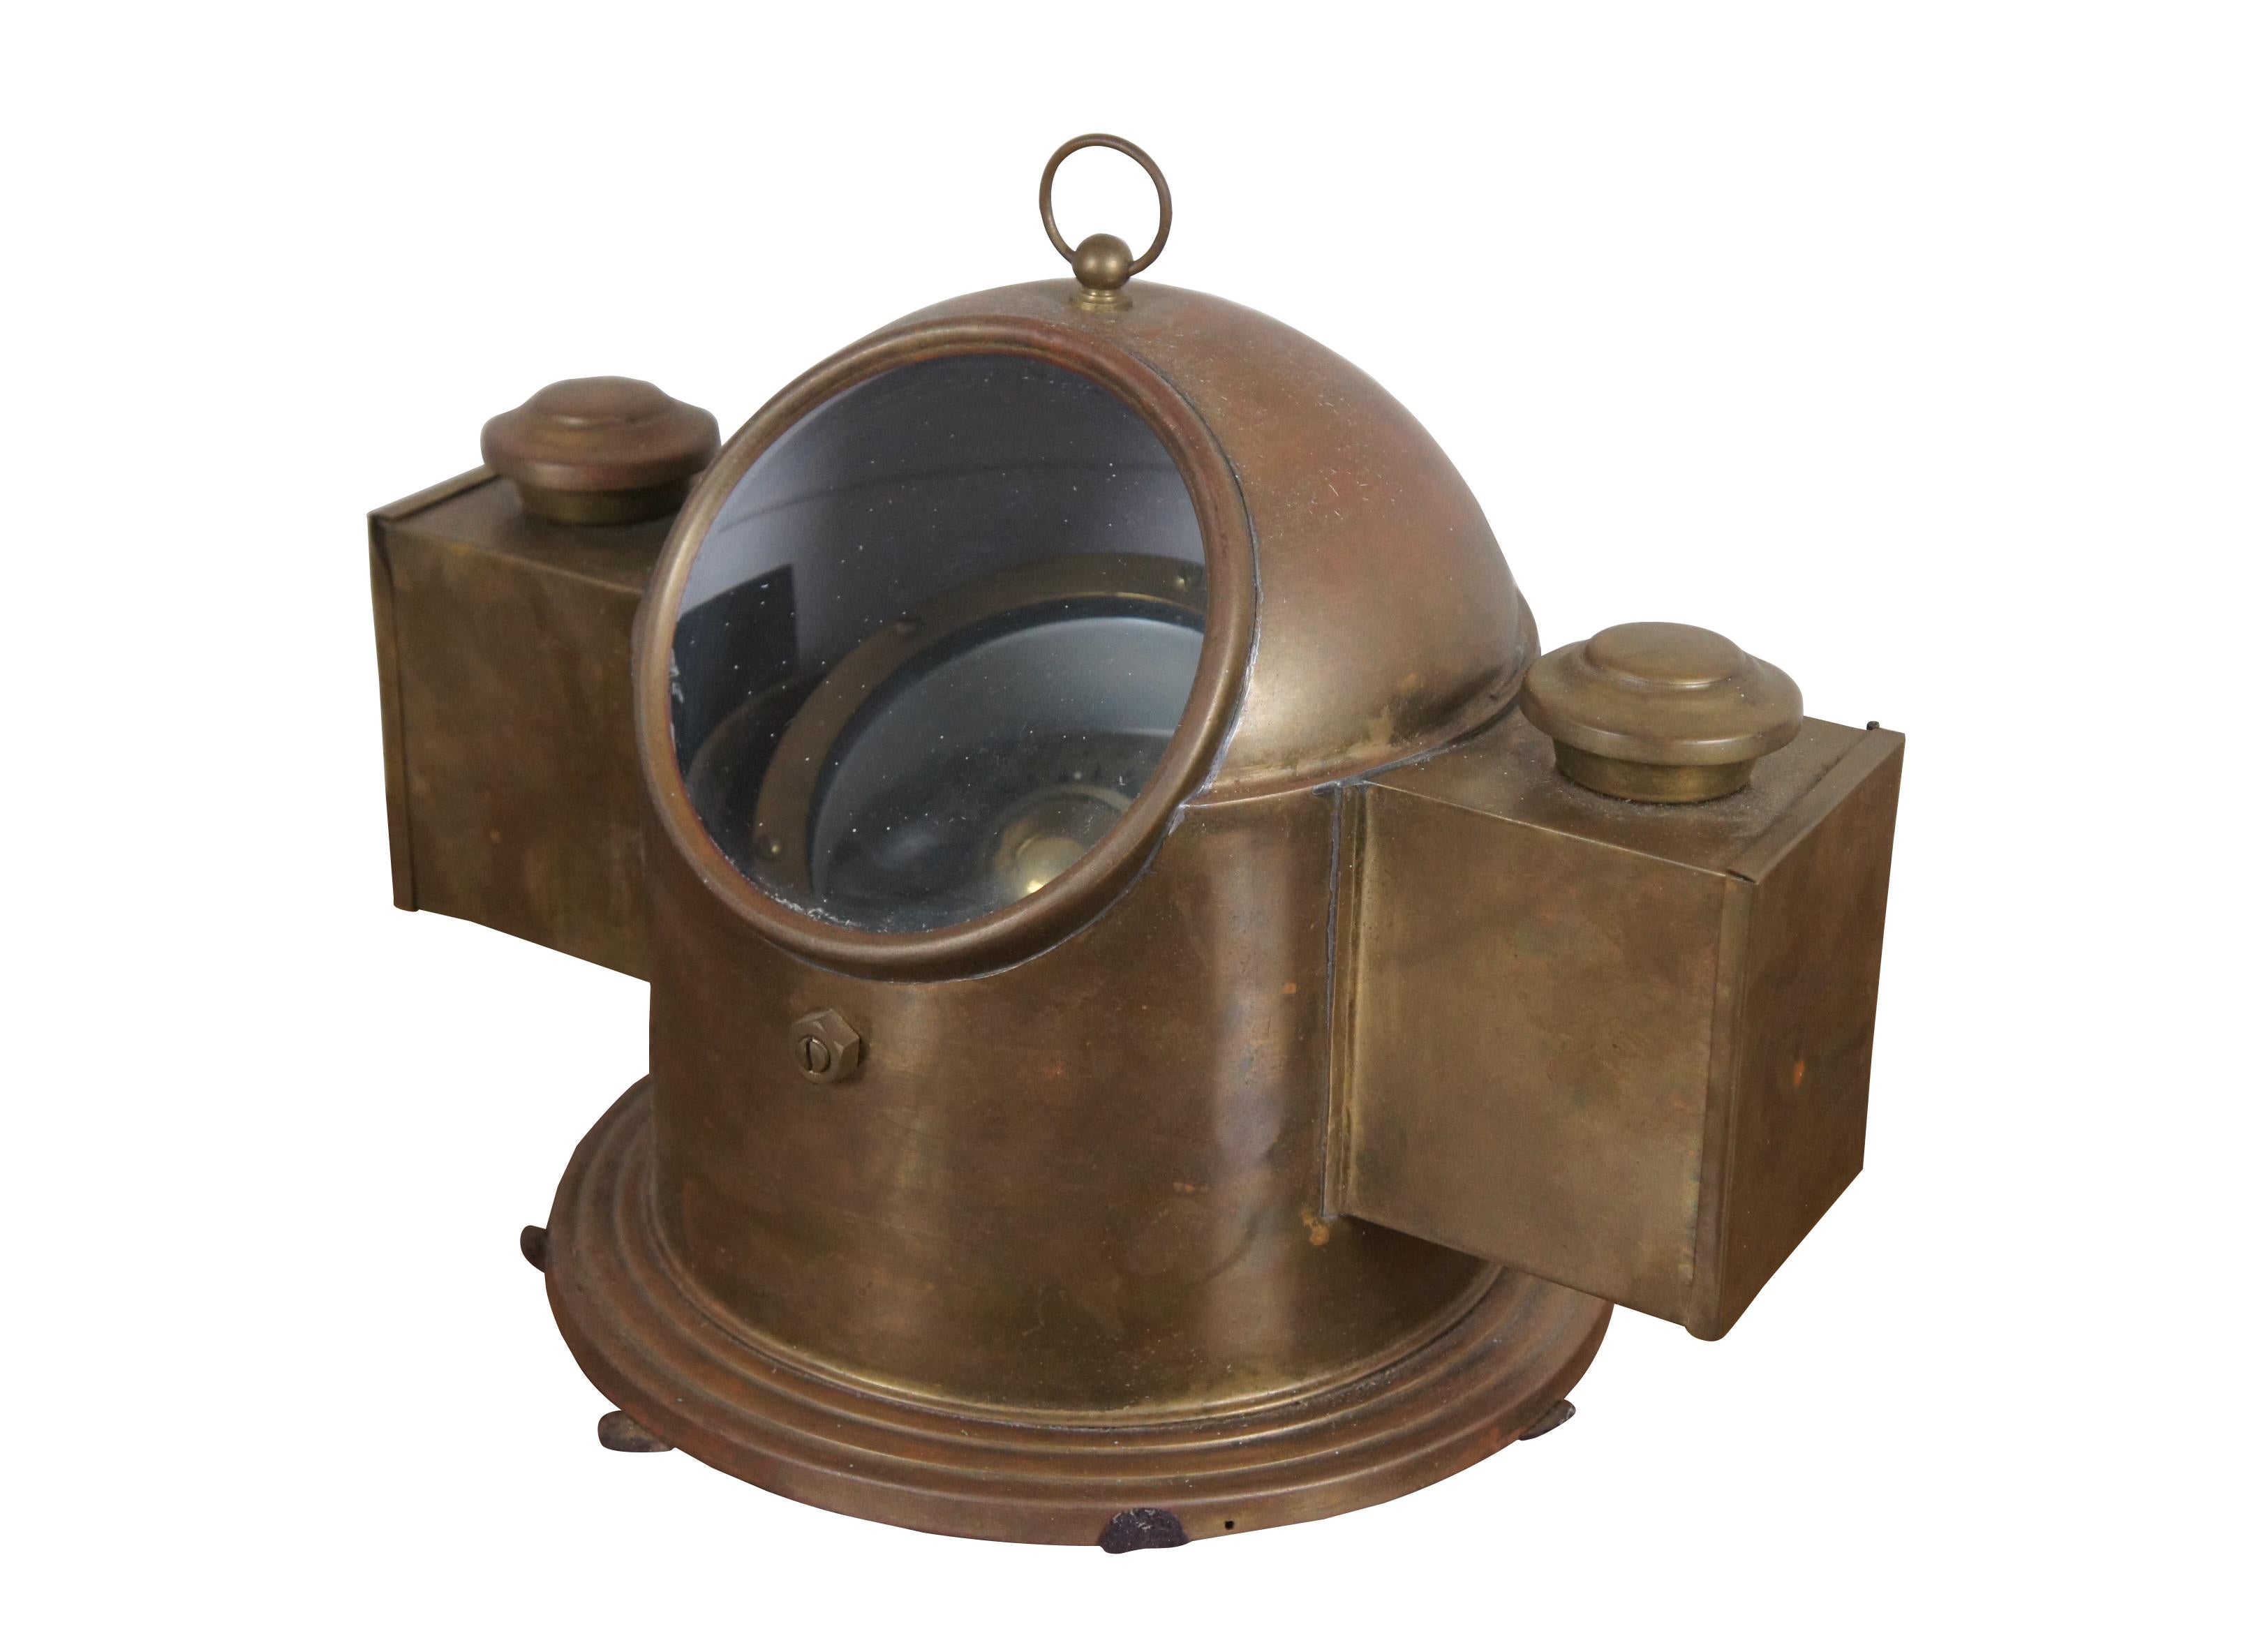 Vintage Byland Smith récupéré laiton nautique / maritime binnacle guimbal navire compas avec double lampes à huile.  

Dimensions :
13,5